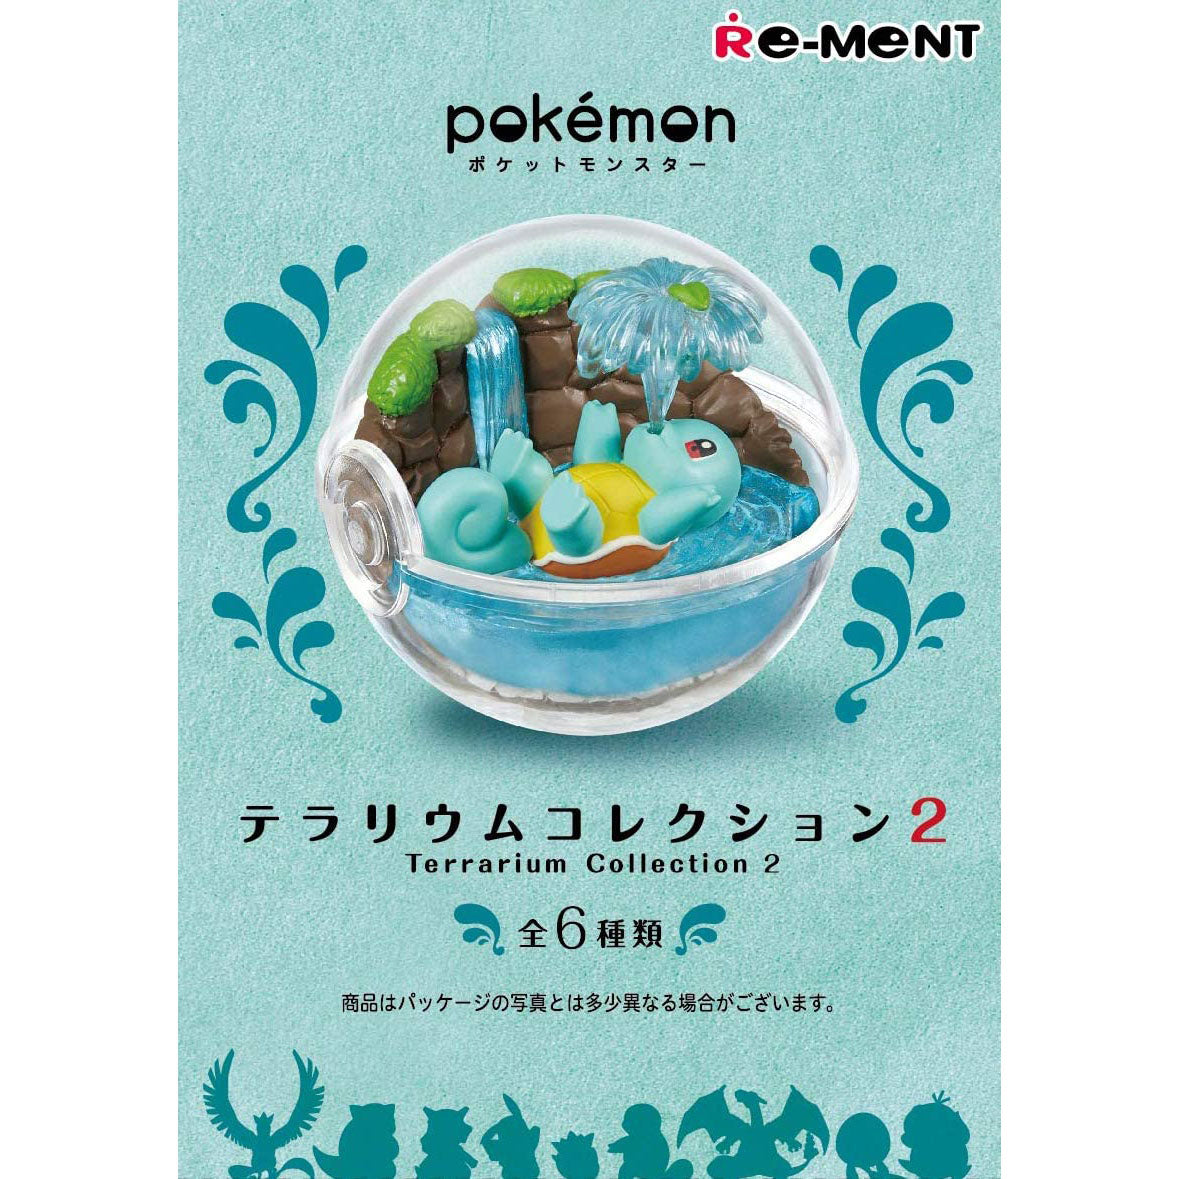 Pokemon Terrarium Collection 2 Re-ment